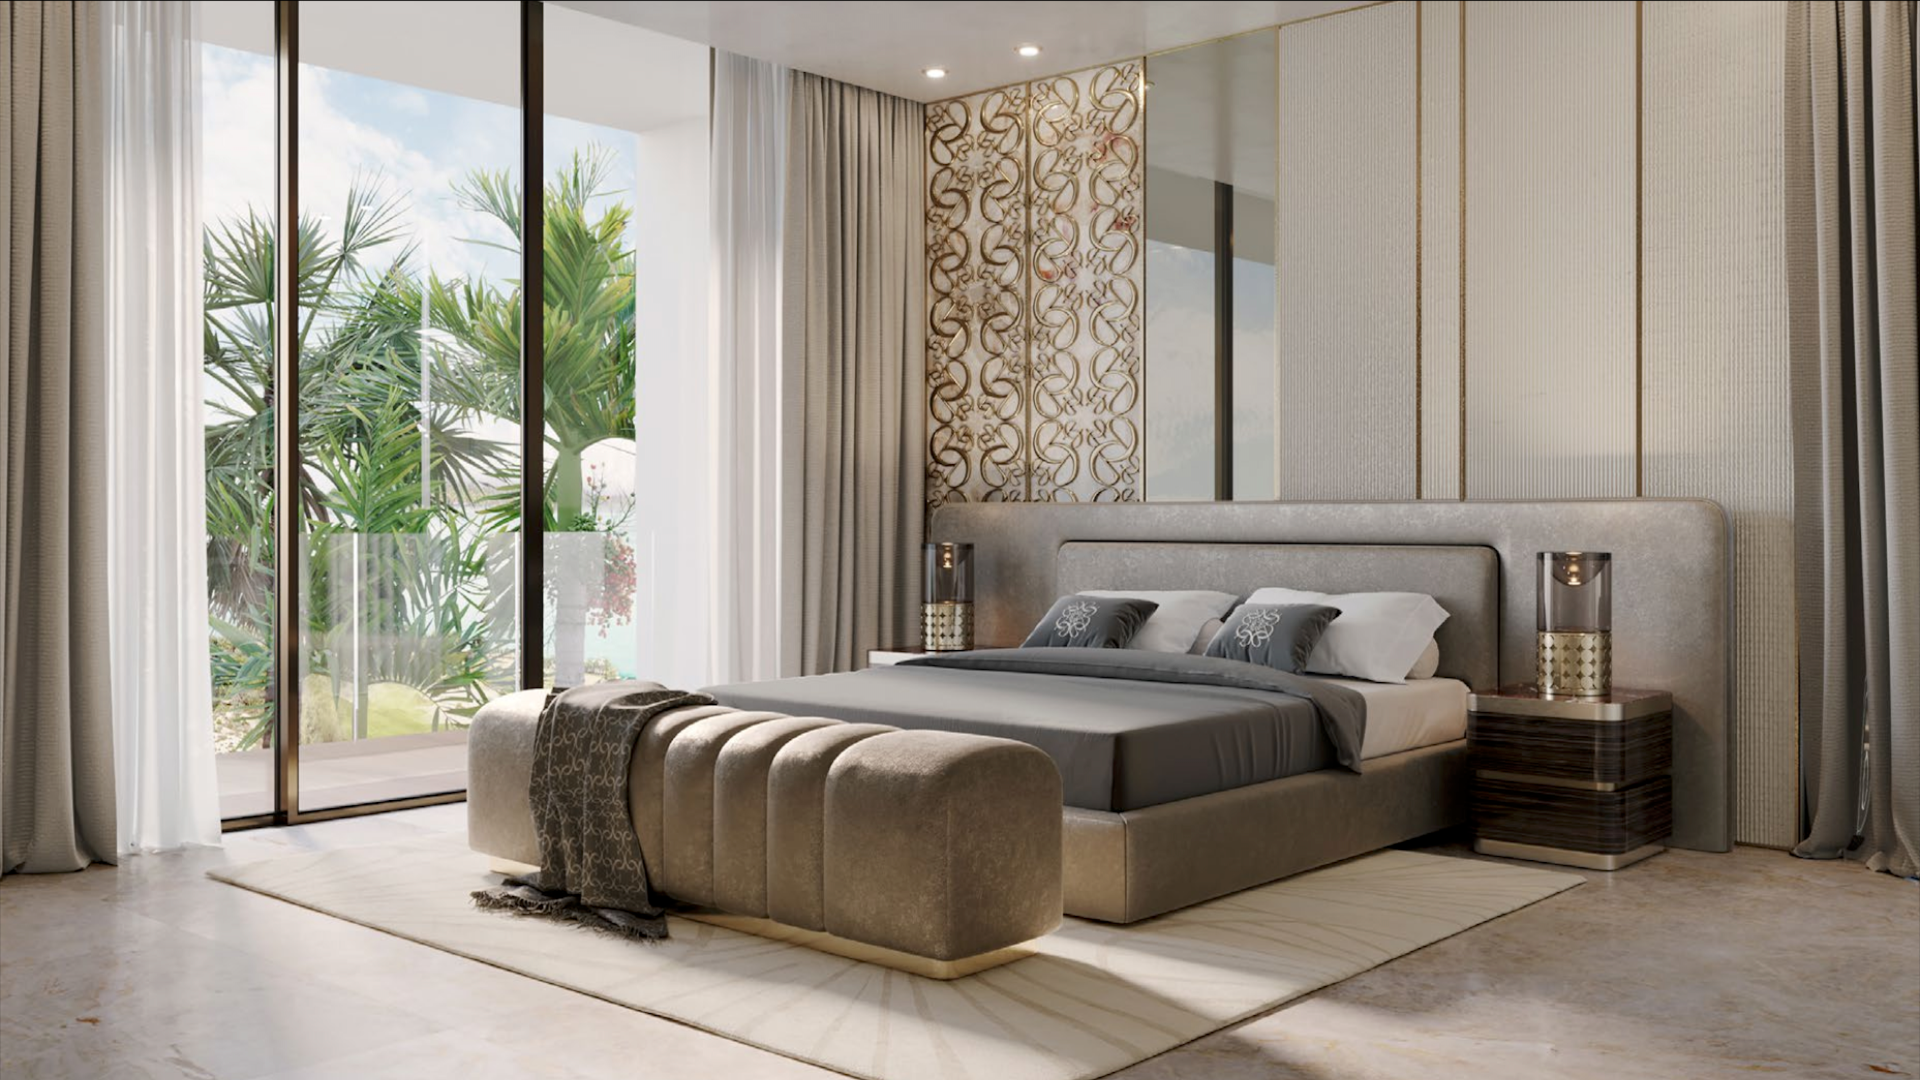  Bedroom Villa For Sale Palm Hills Lp07077 129c355a2a16ce00.png